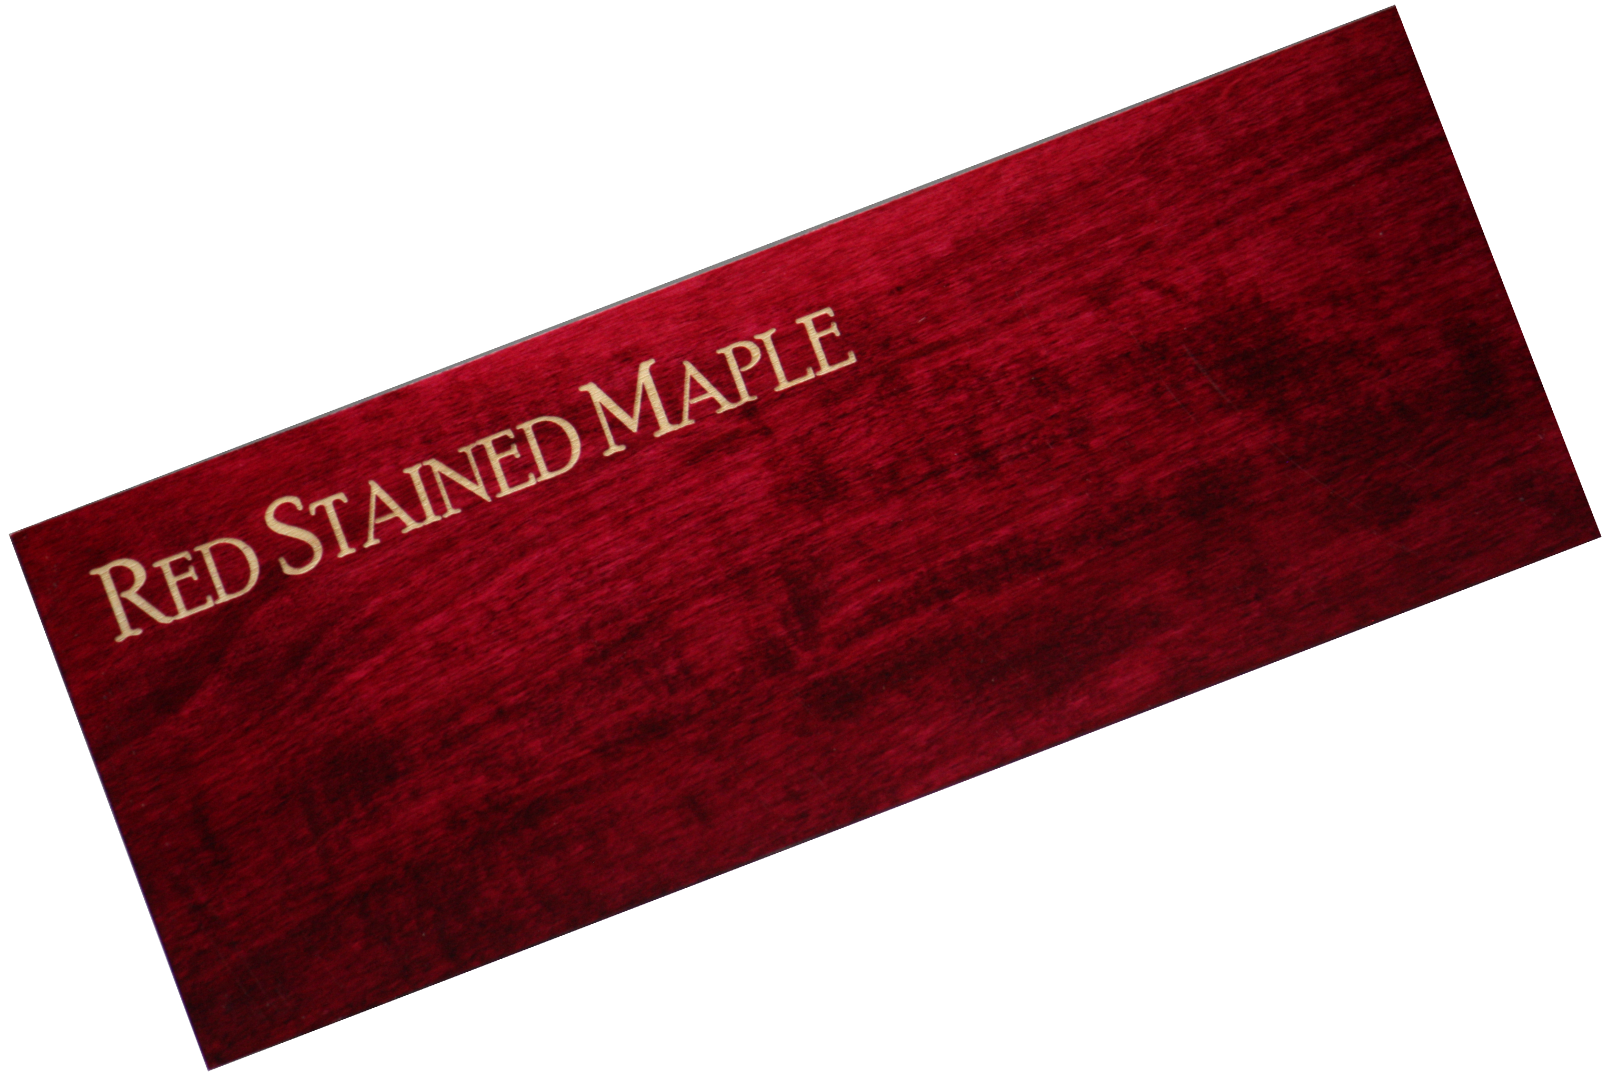 Wood Strip (Alder/Maple/Cherry/Blue Pine) 4.5" x 14.5" x  (1/16", 3/32", 1/8", 3/16" or 1/4") - LSTX13-Alder-Maple-Cherry-BluePine-A-1/8-F